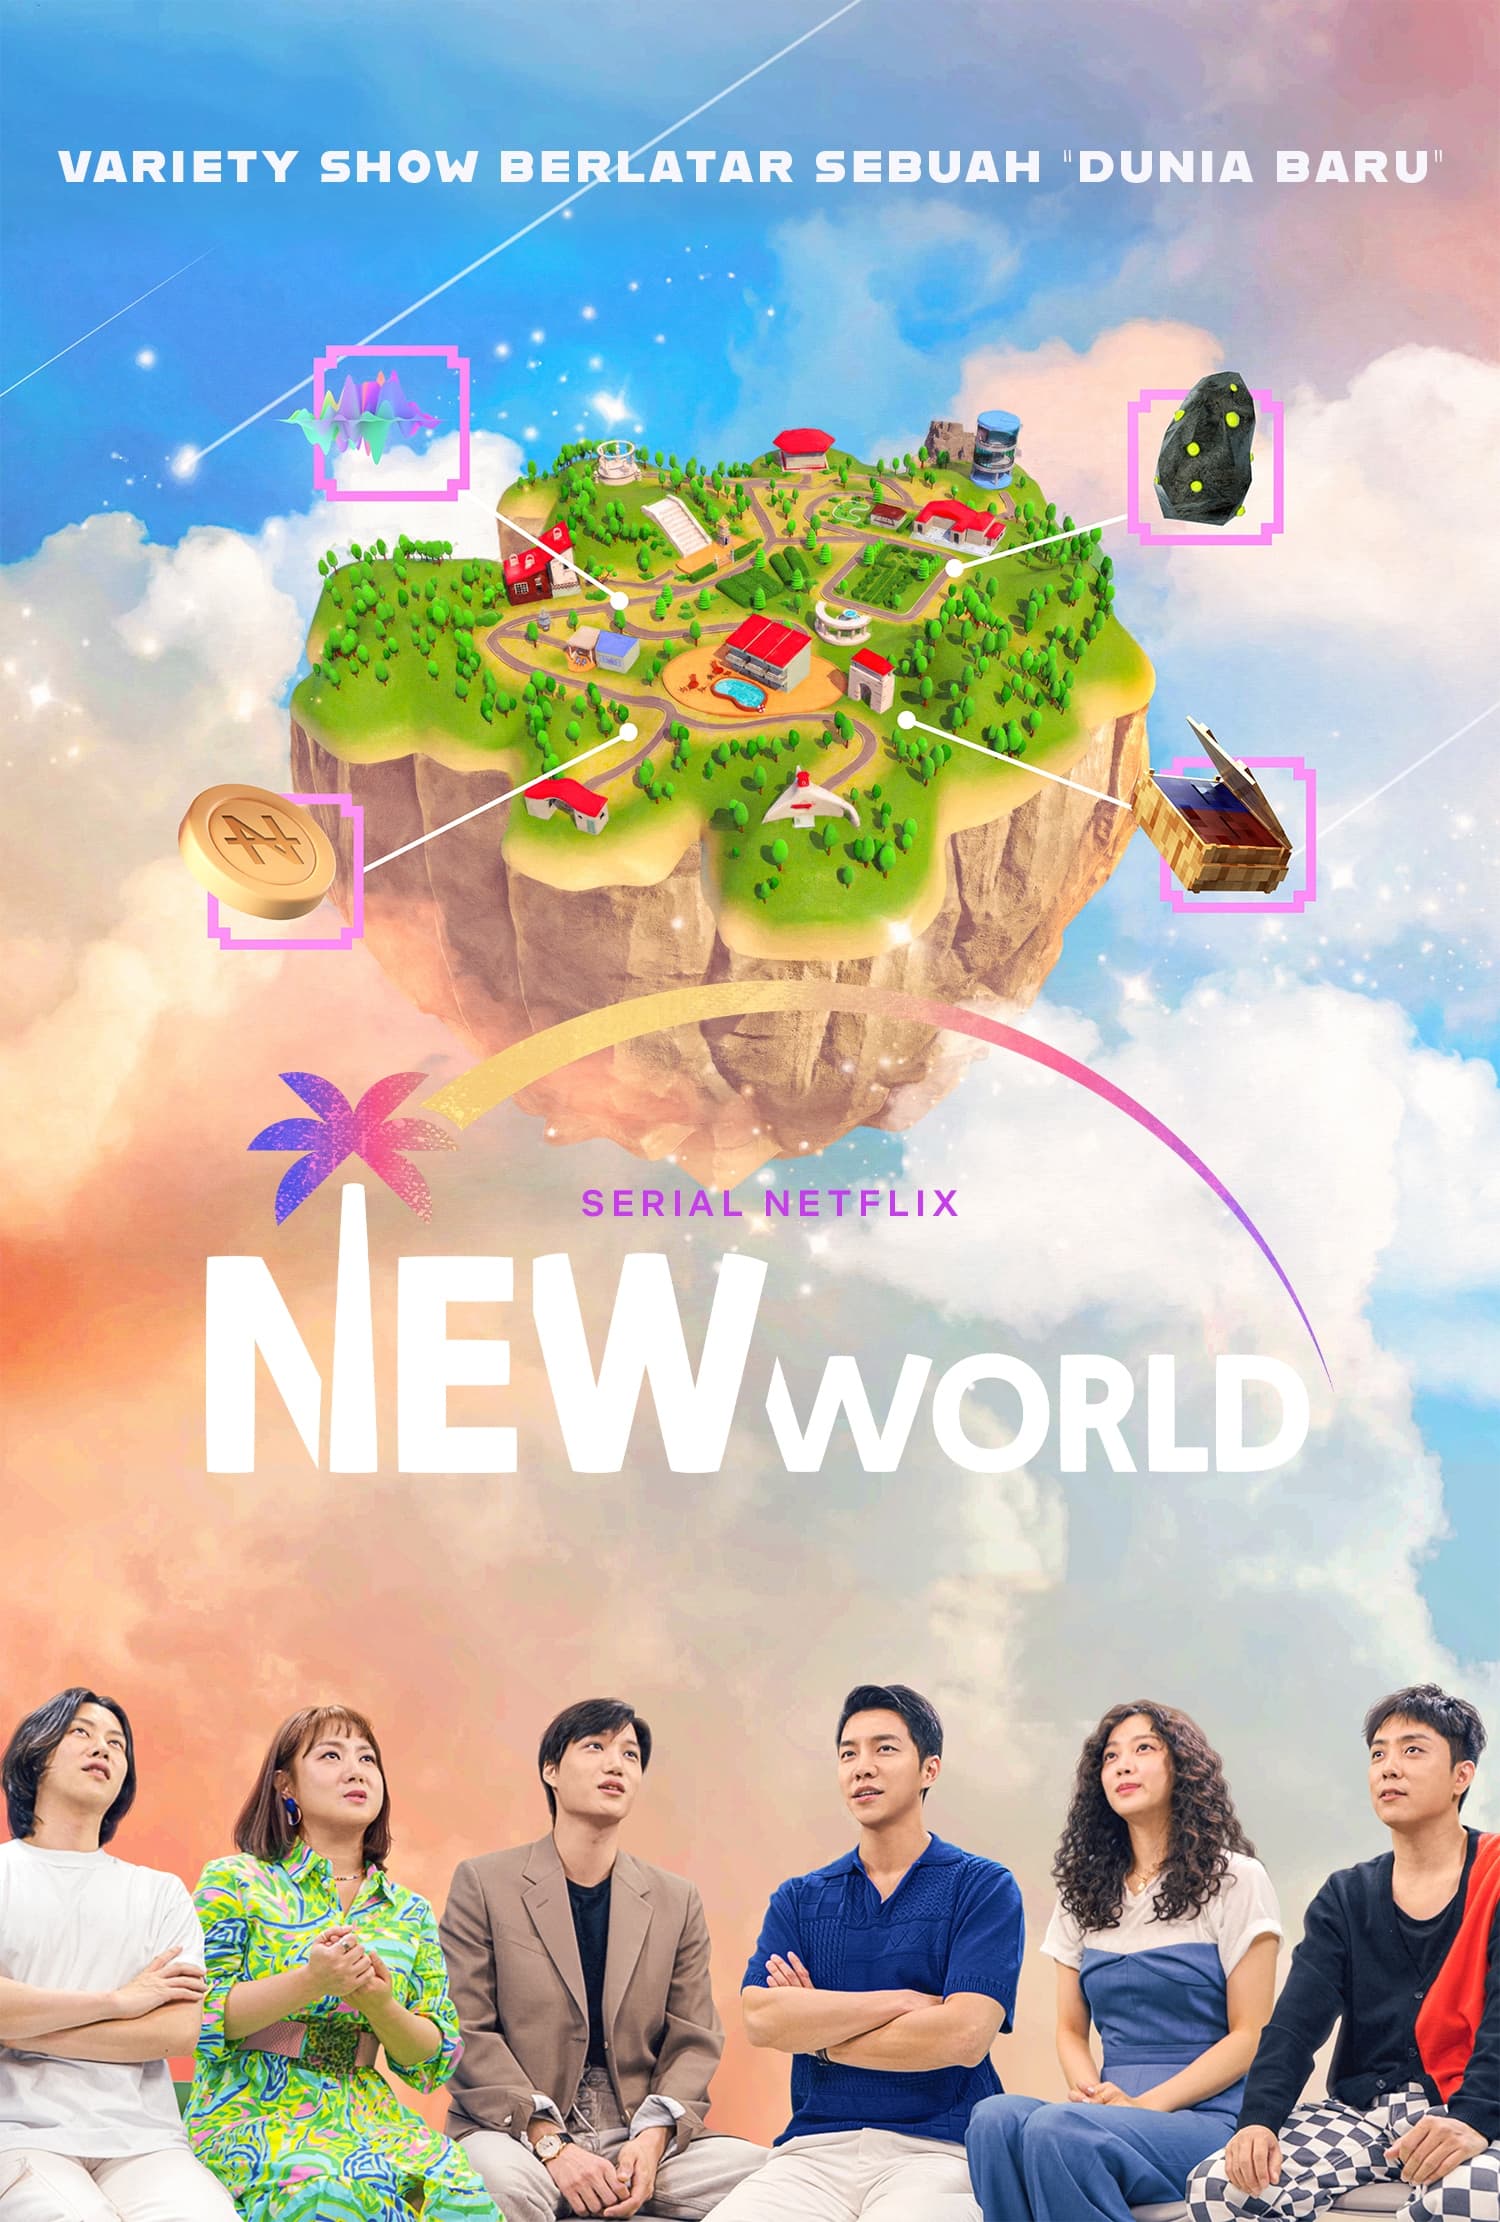 مشاهدة مسلسل العالم الجديد New World الحلقة 4 الرابعة